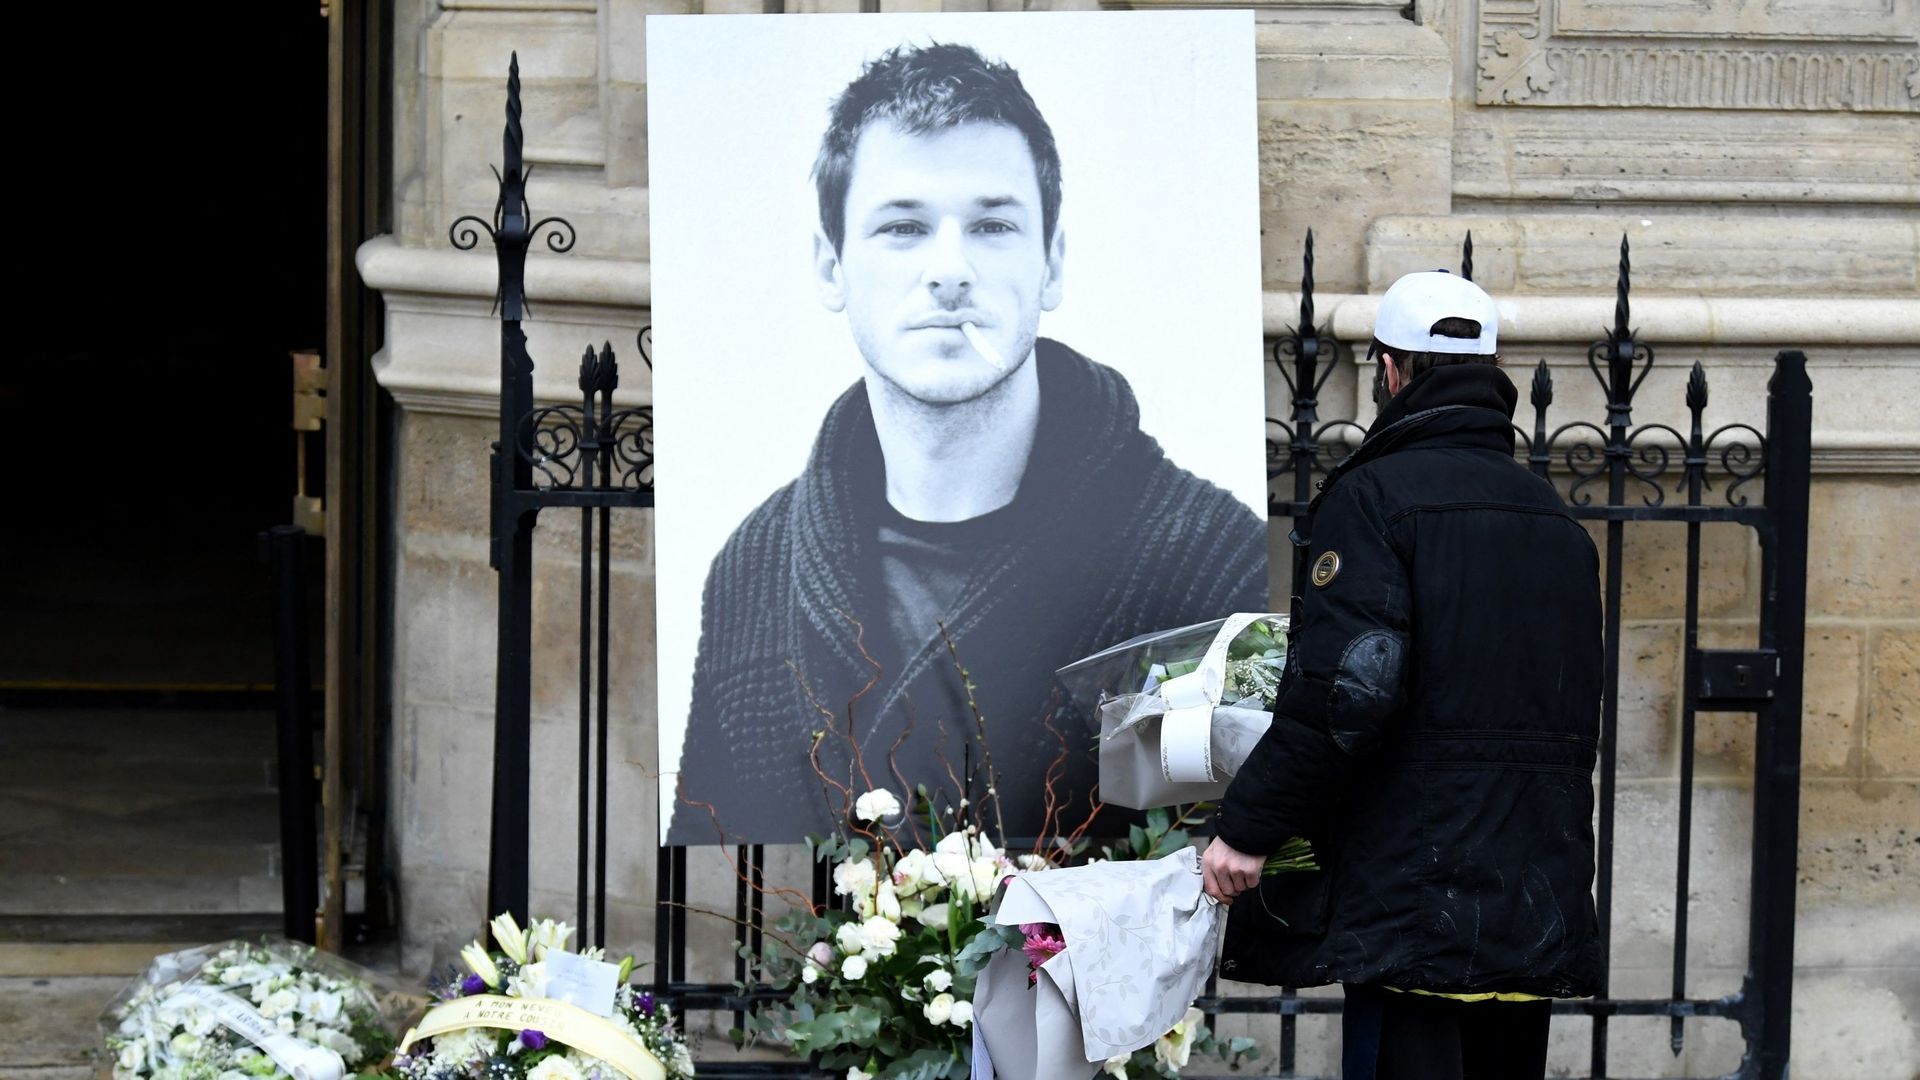 Un homme dépose des fleurs près d’un portrait de l’acteur français Gaspard Ulliel devant l’église Saint-Eustache à Paris, le 27 janvier 2022, en prévision de ses funérailles après sa mort à 37 ans à la suite d’un accident de ski le 19 janvier 2022.